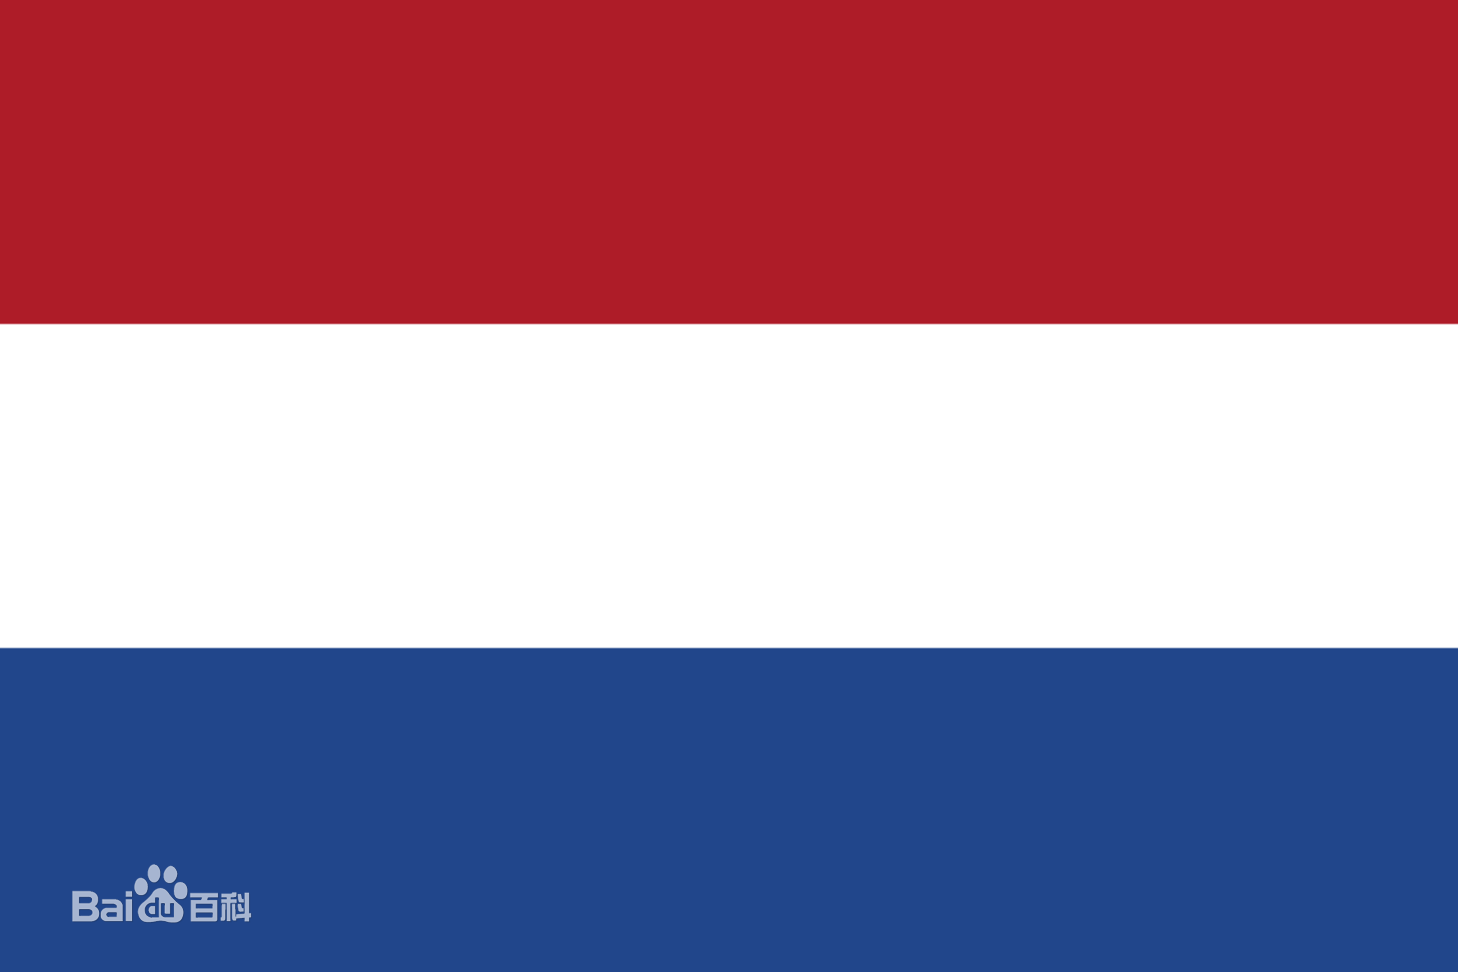 荷兰国旗,红色代表革命胜利